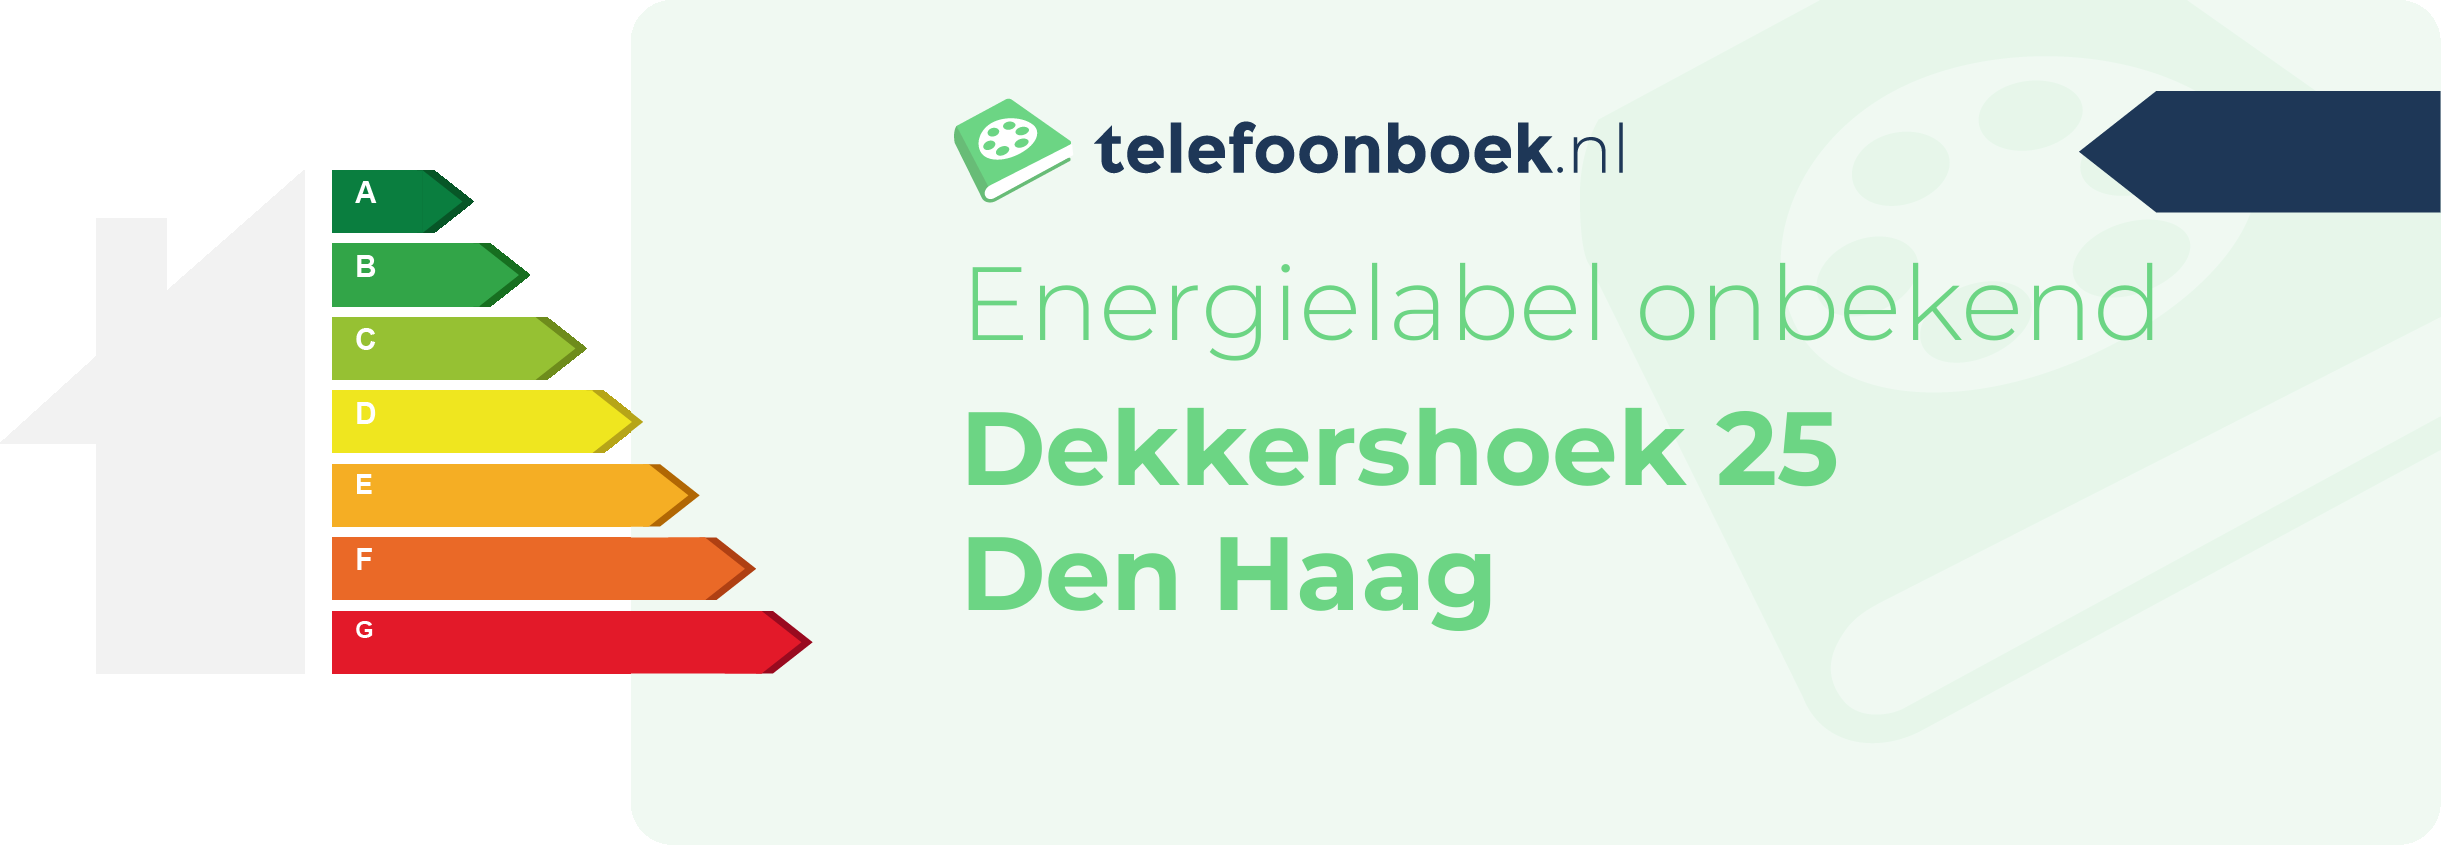 Energielabel Dekkershoek 25 Den Haag